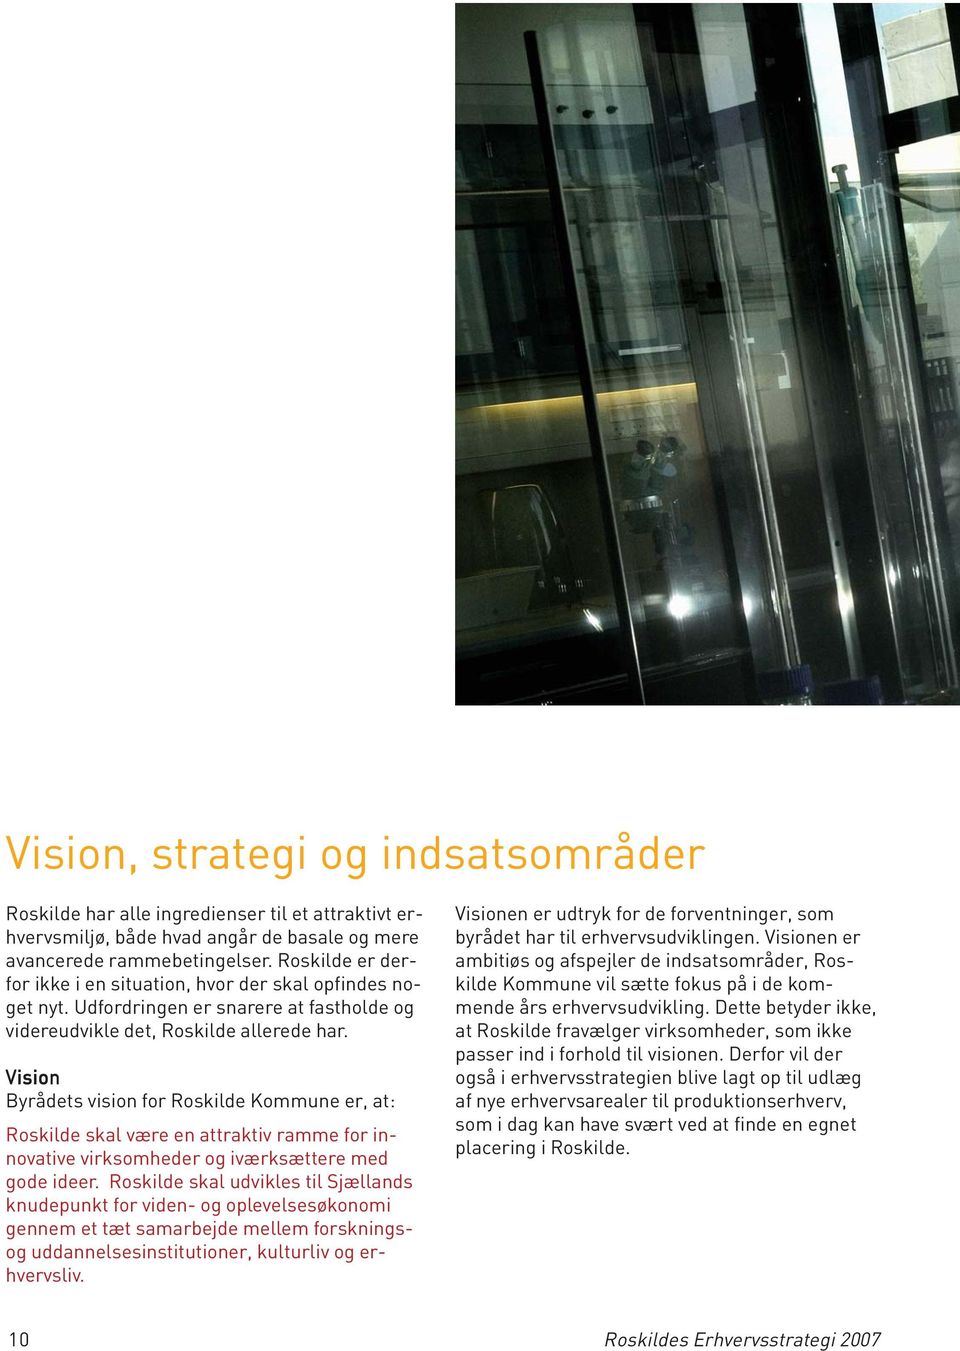 Vision Byrådets vision for Roskilde Kommune er, at: Roskilde skal være en attraktiv ramme for innovative virksomheder og iværksættere med gode ideer.